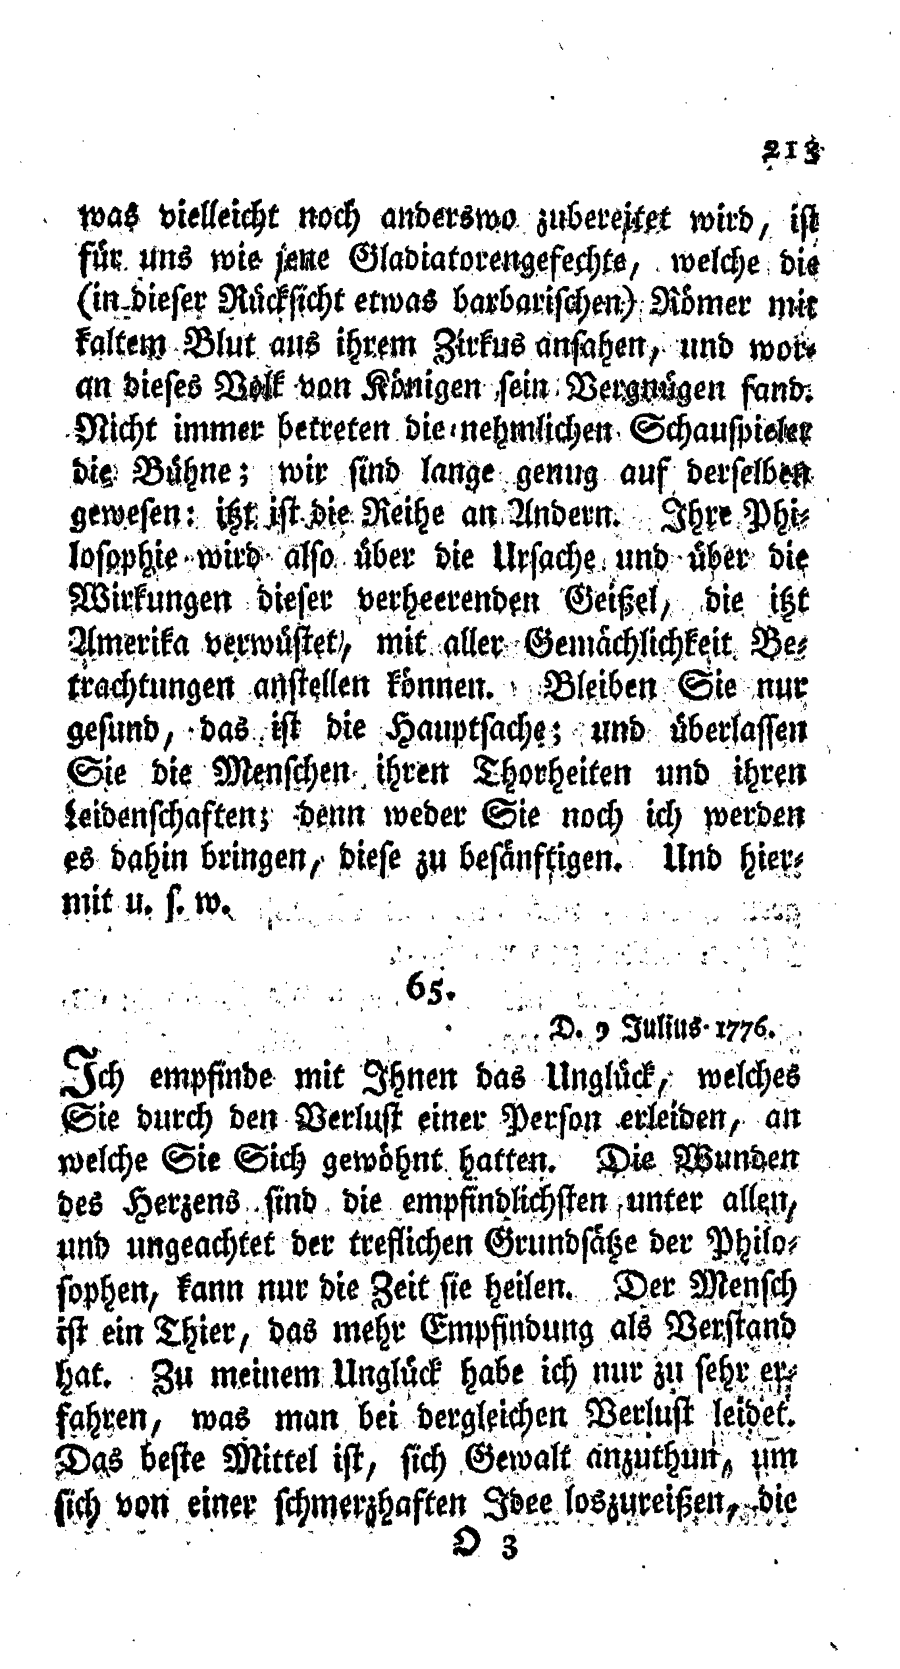 S. 213, Obj. 2